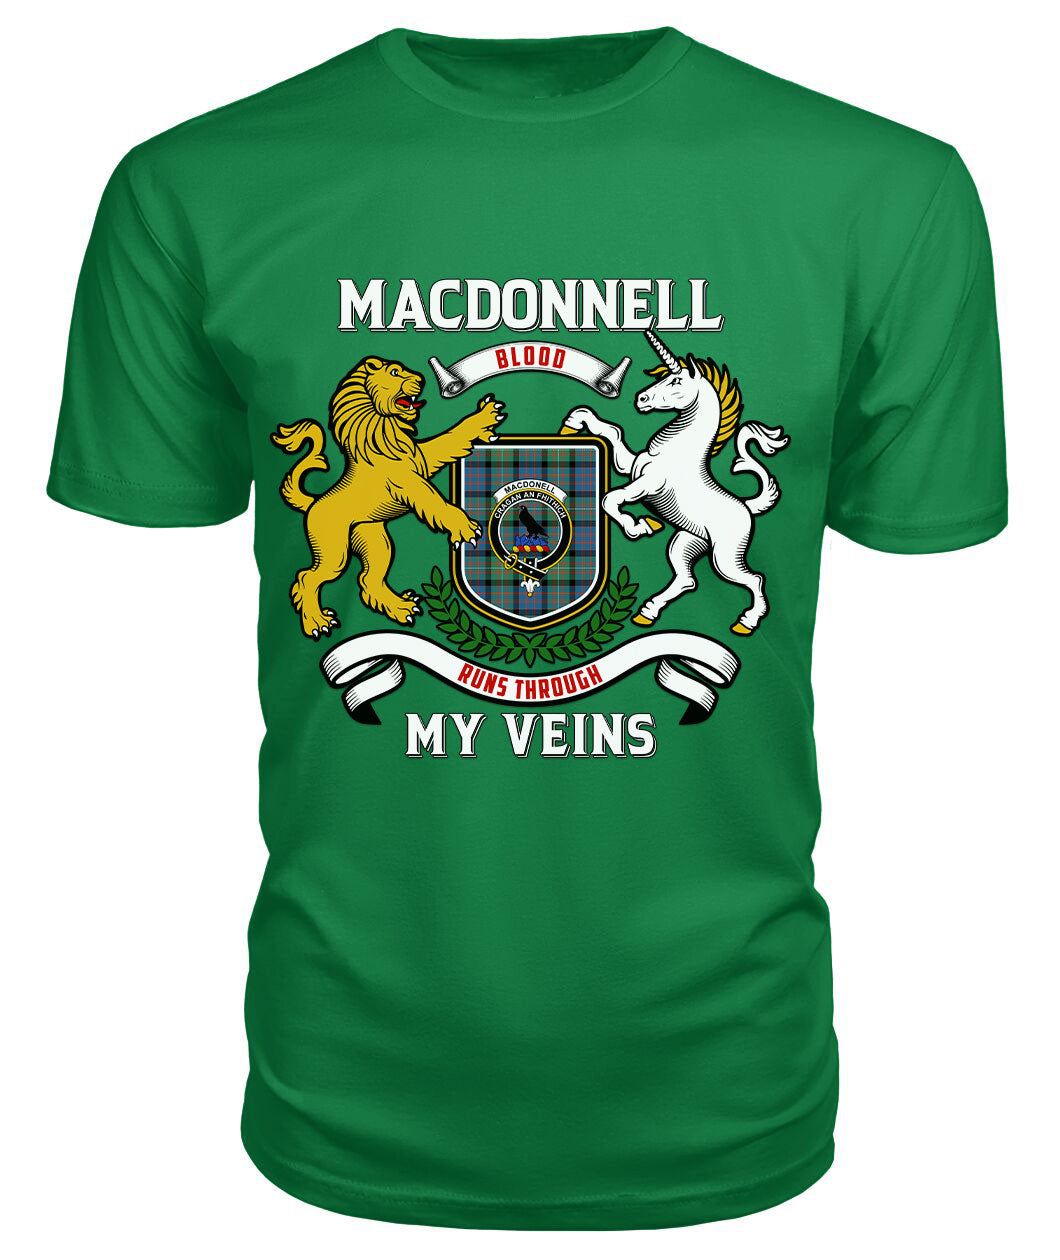 MacDonnell of Glengarry Ancient Tartan Crest 2D T-shirt - Blood Runs Through My Veins Style